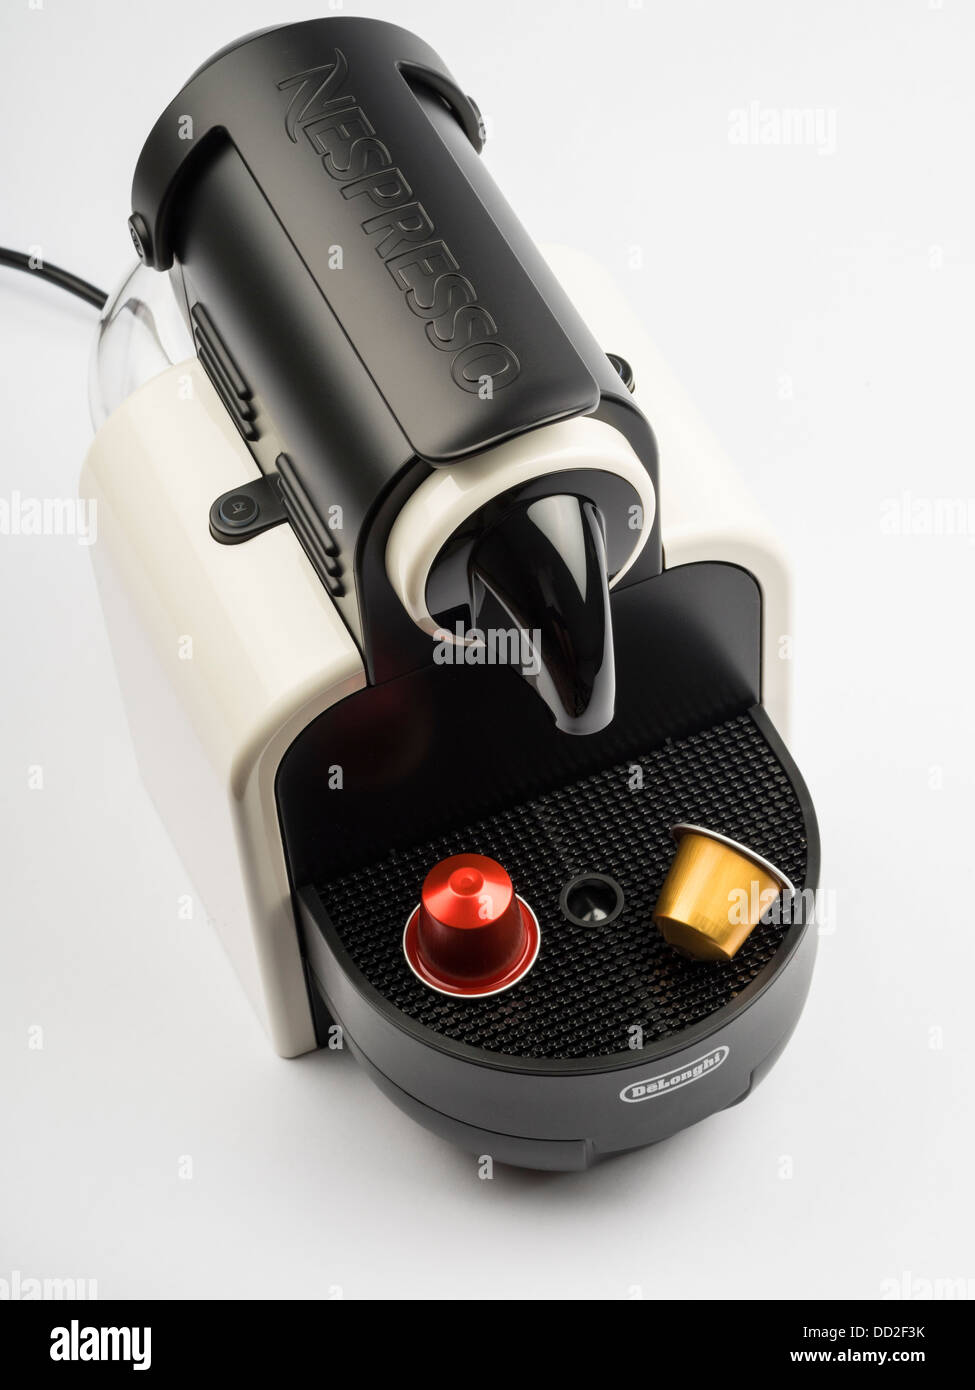 Udelade kunstner Effektivt Nespresso delonghi coffee machine hi-res stock photography and images -  Alamy